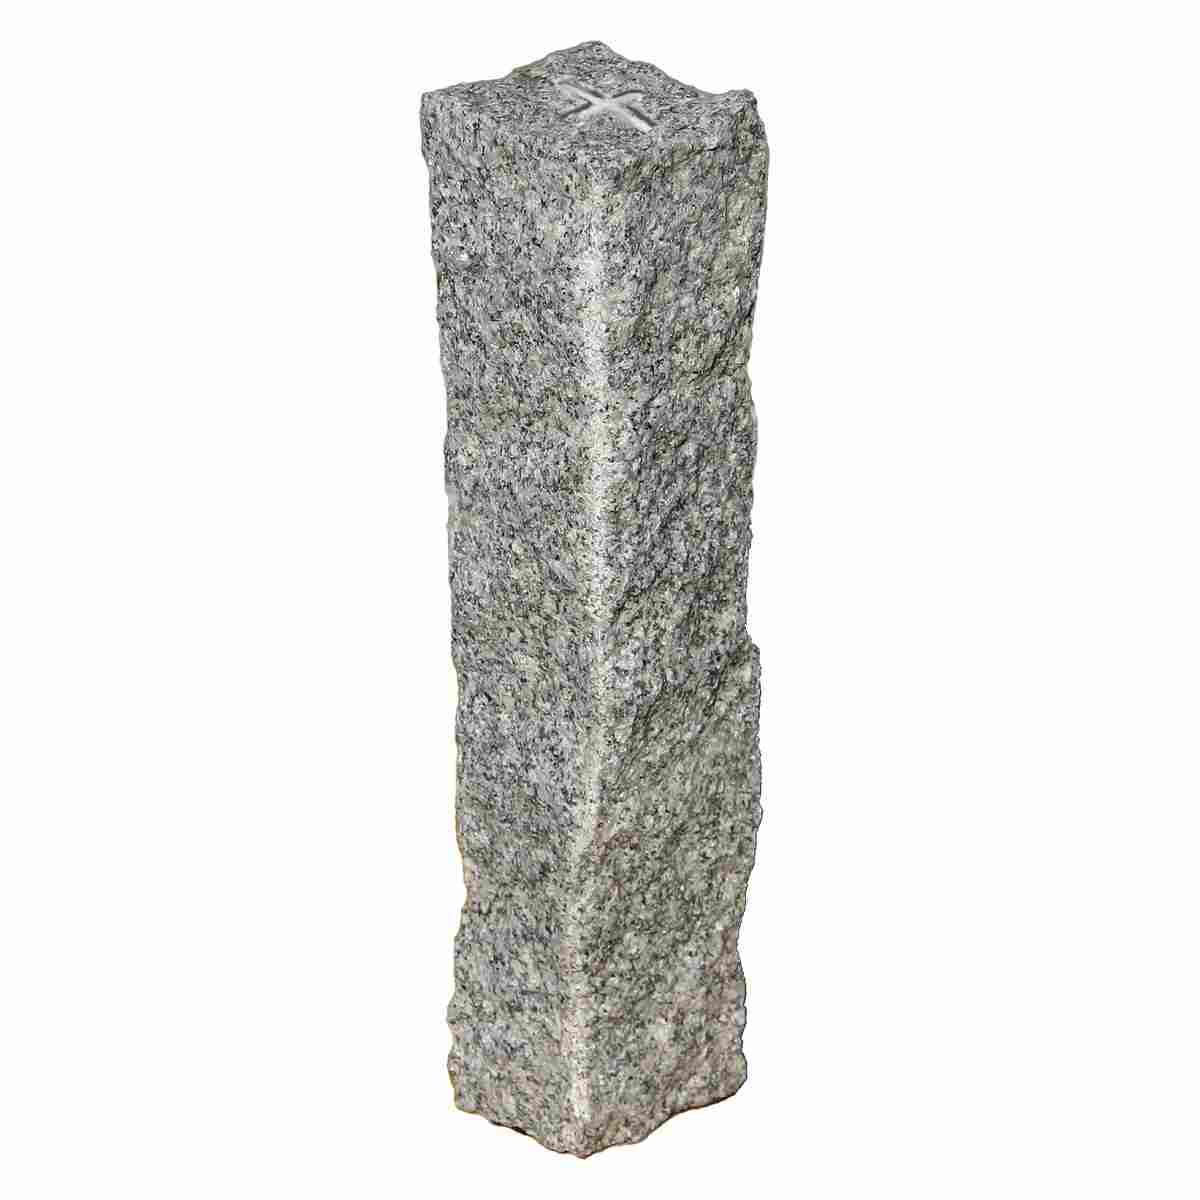 Granit-Grenzsteine mit Strichkreuz Kopfgöße 10-12cm, Länge 50-55cm